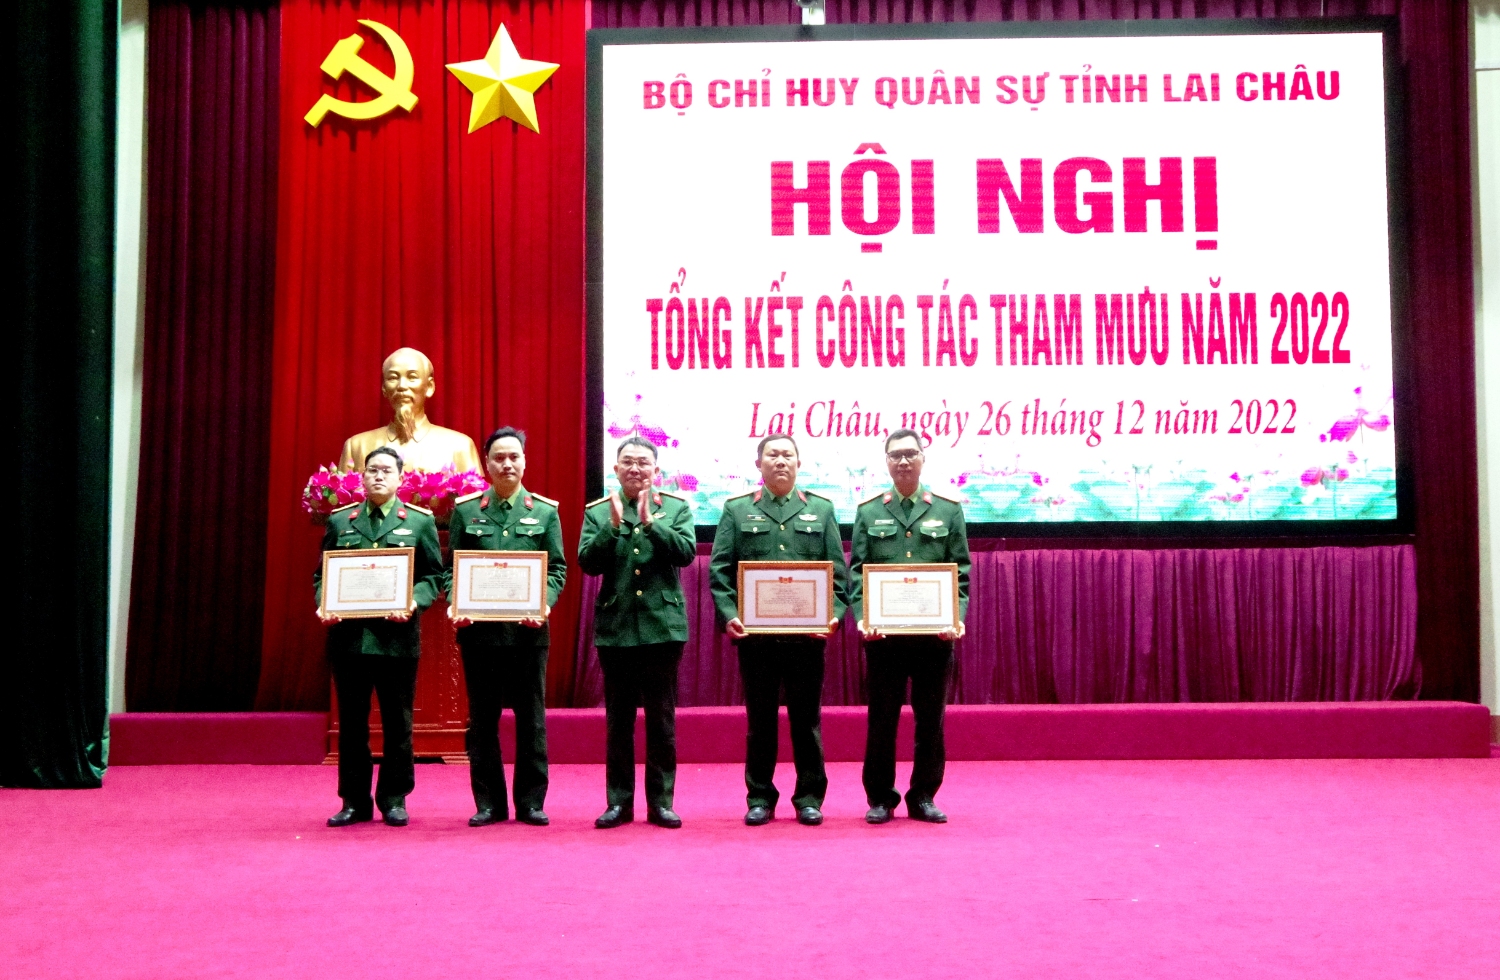 Thượng tá Dương Văn Quyền - Phó Tham mưu trưởng Bộ CHQS tỉnh trao Giấy khen cho các cá nhân có thành tích trong thực hiện nhiệm vụ QSQP và phong trào thi đua quyết thắng năm 2022